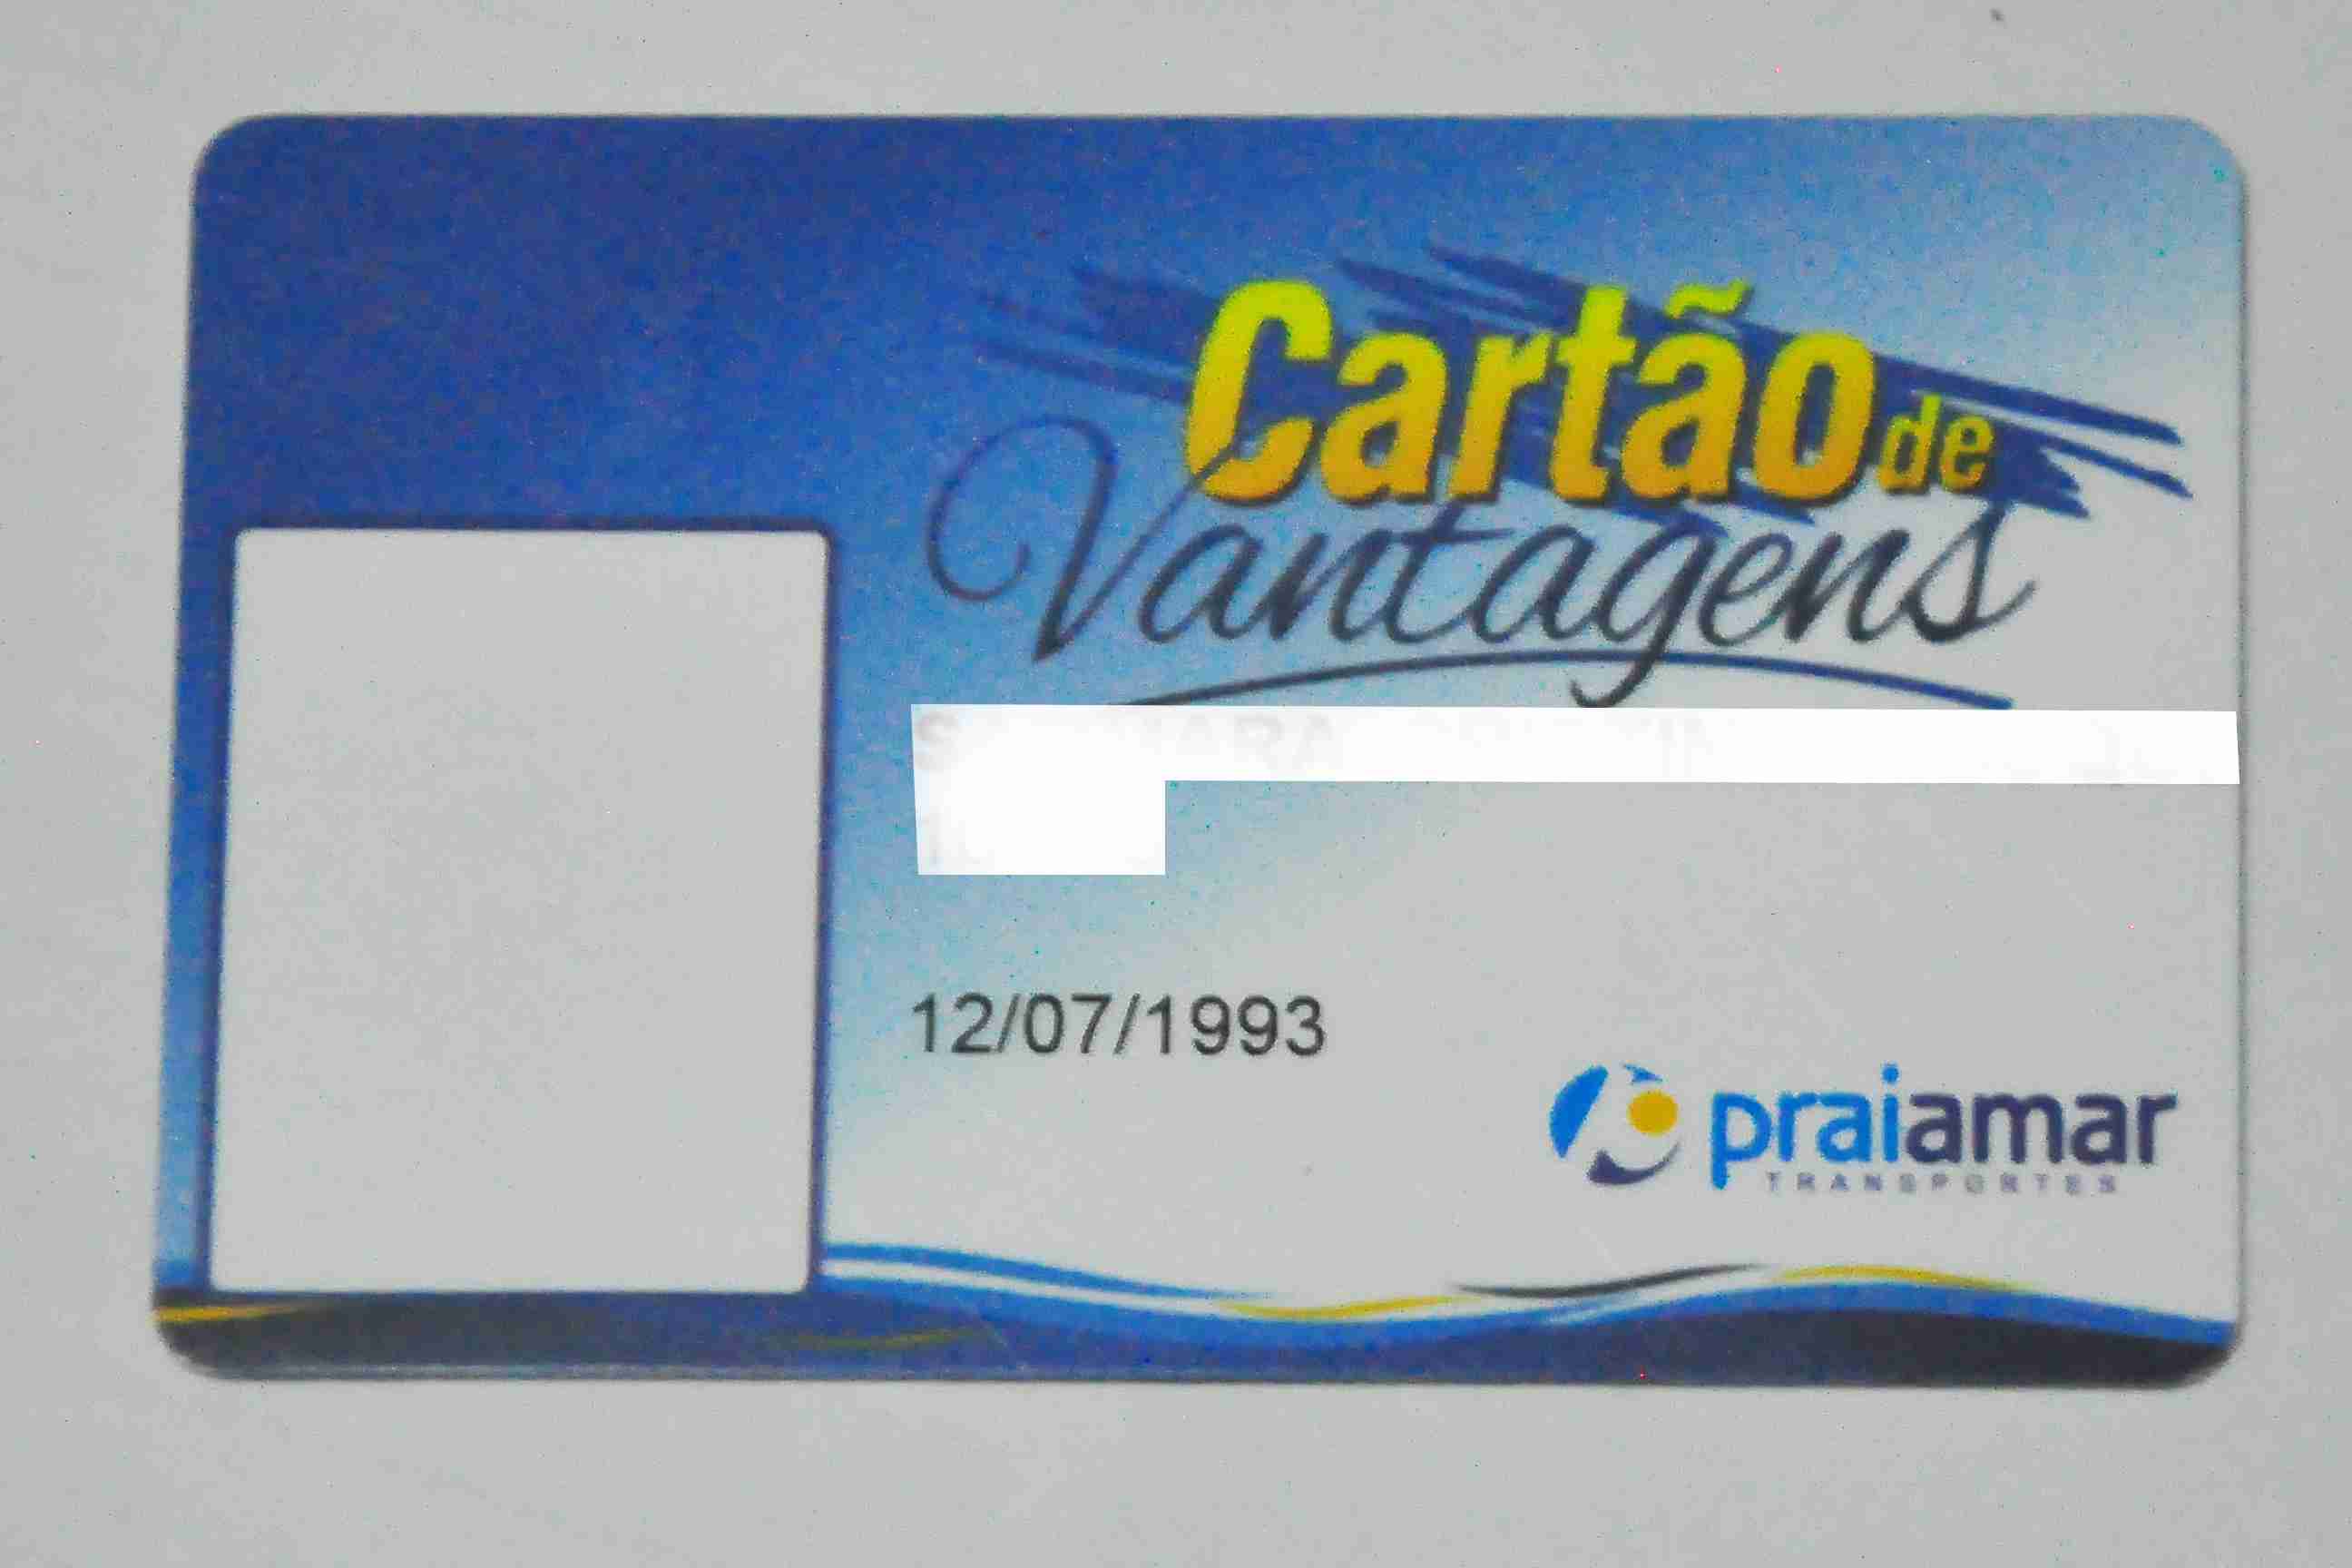 Compra e recarga de bilhetes eletrônicos da Praiamar são interrompidas para implantação de novo sistema